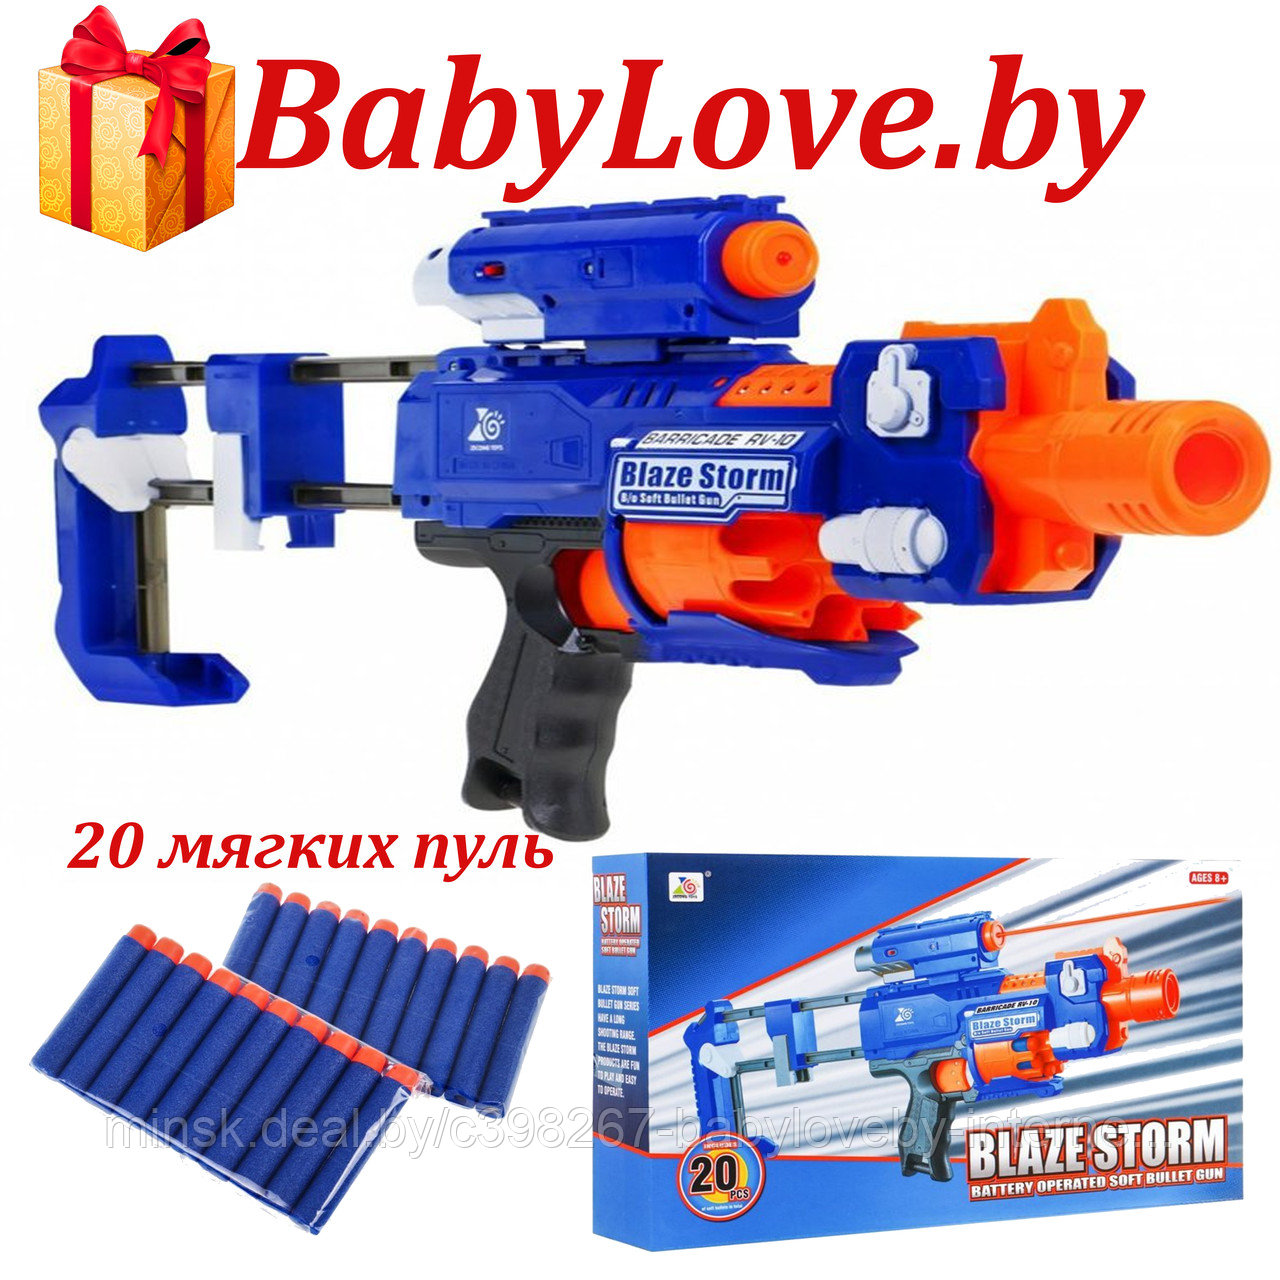 ZC7057 Детское игрушечное оружье- бластер-пистолет BlazeStorm 7057, фото 1